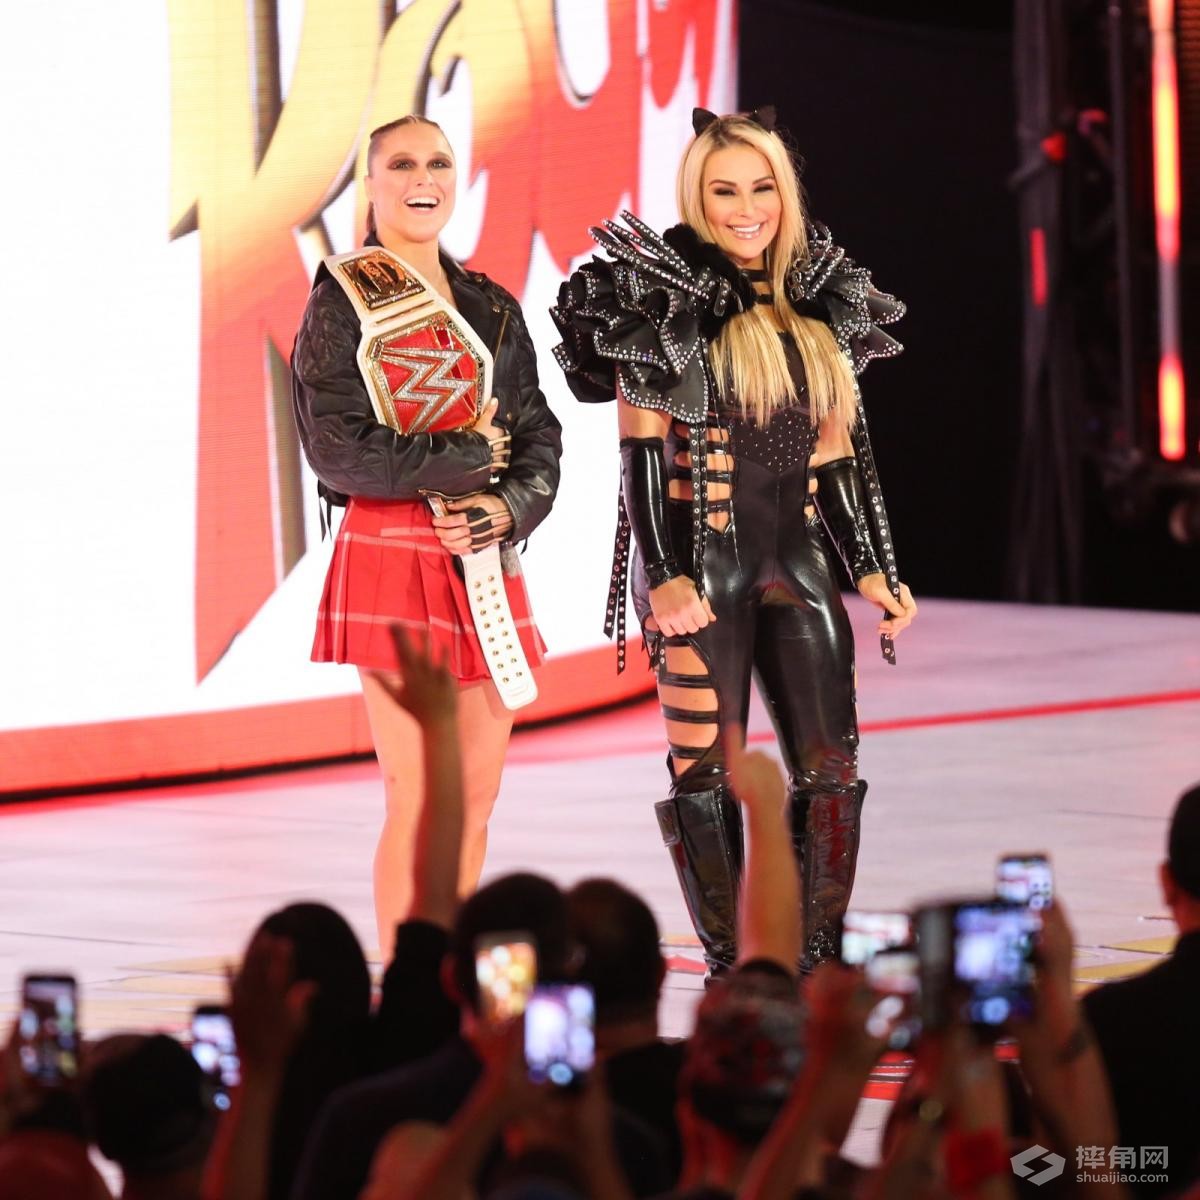 RAW女子冠军赛，隆达·罗西VS阿莱克萨·布里斯！《Hell in a Cell 2018》